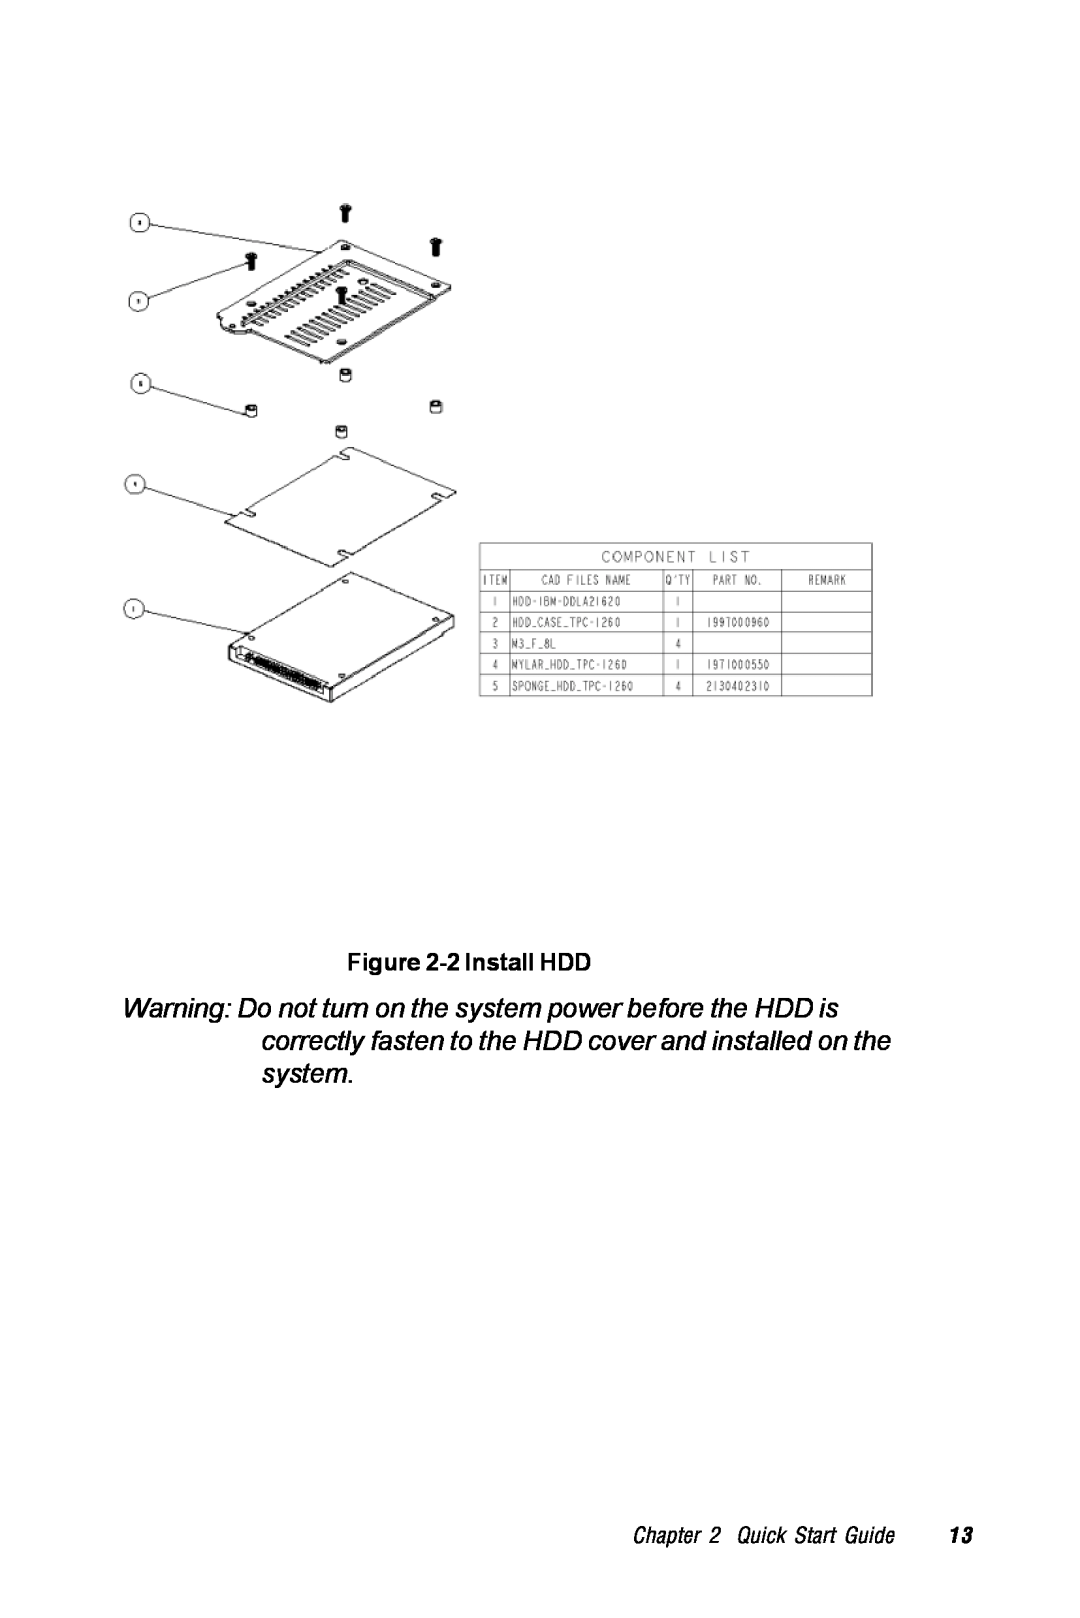 Advantech TPC-1260 manual 2 Install HDD, Quick Start Guide 